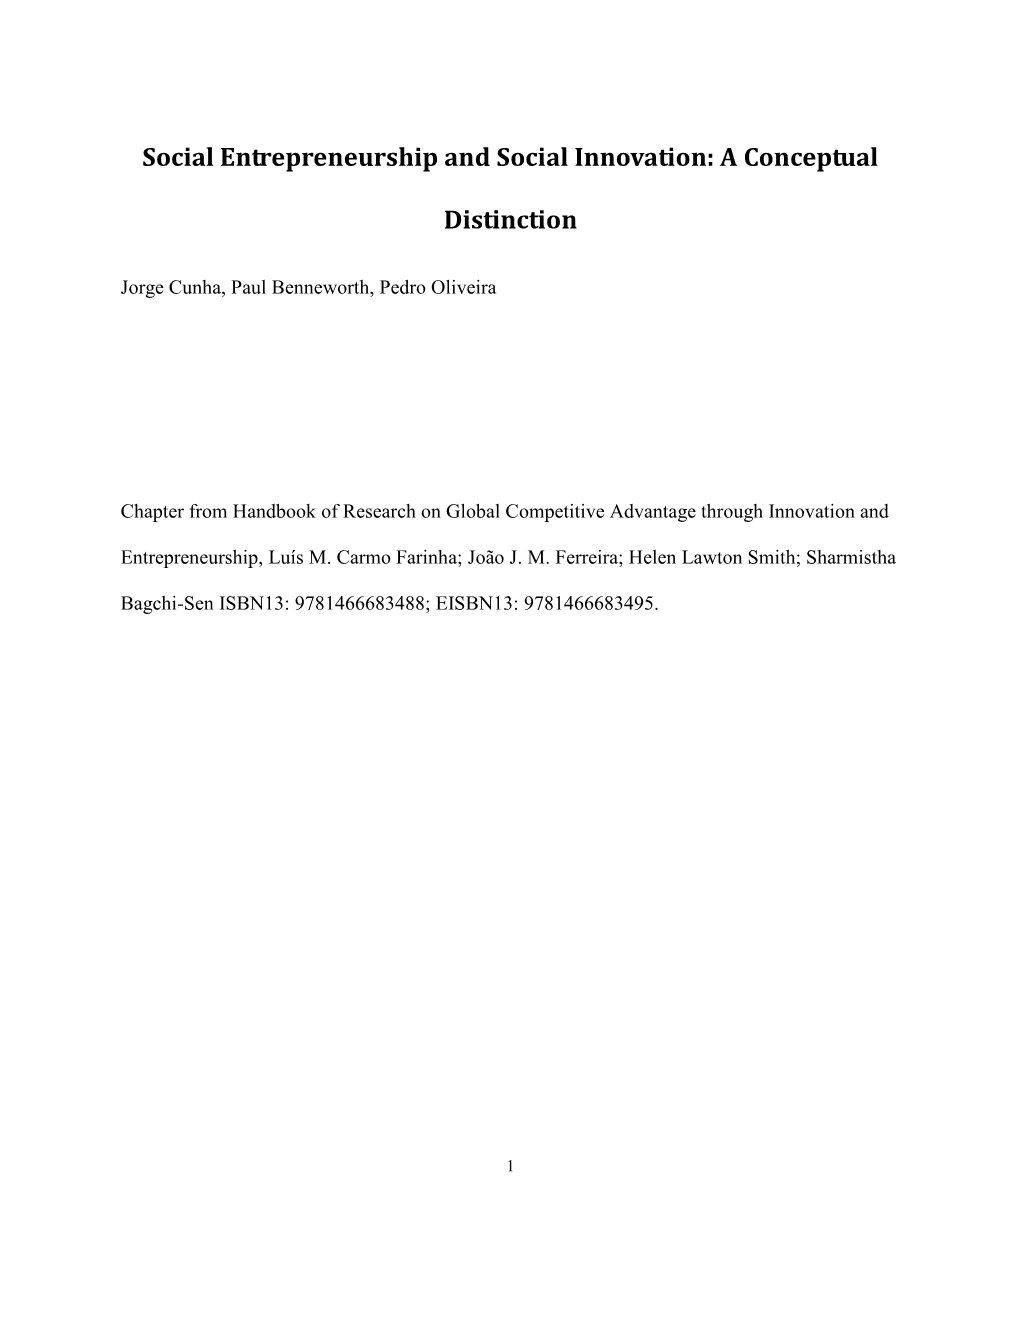 Social Entrepreneurship and Social Innovation: a Conceptual Distinction